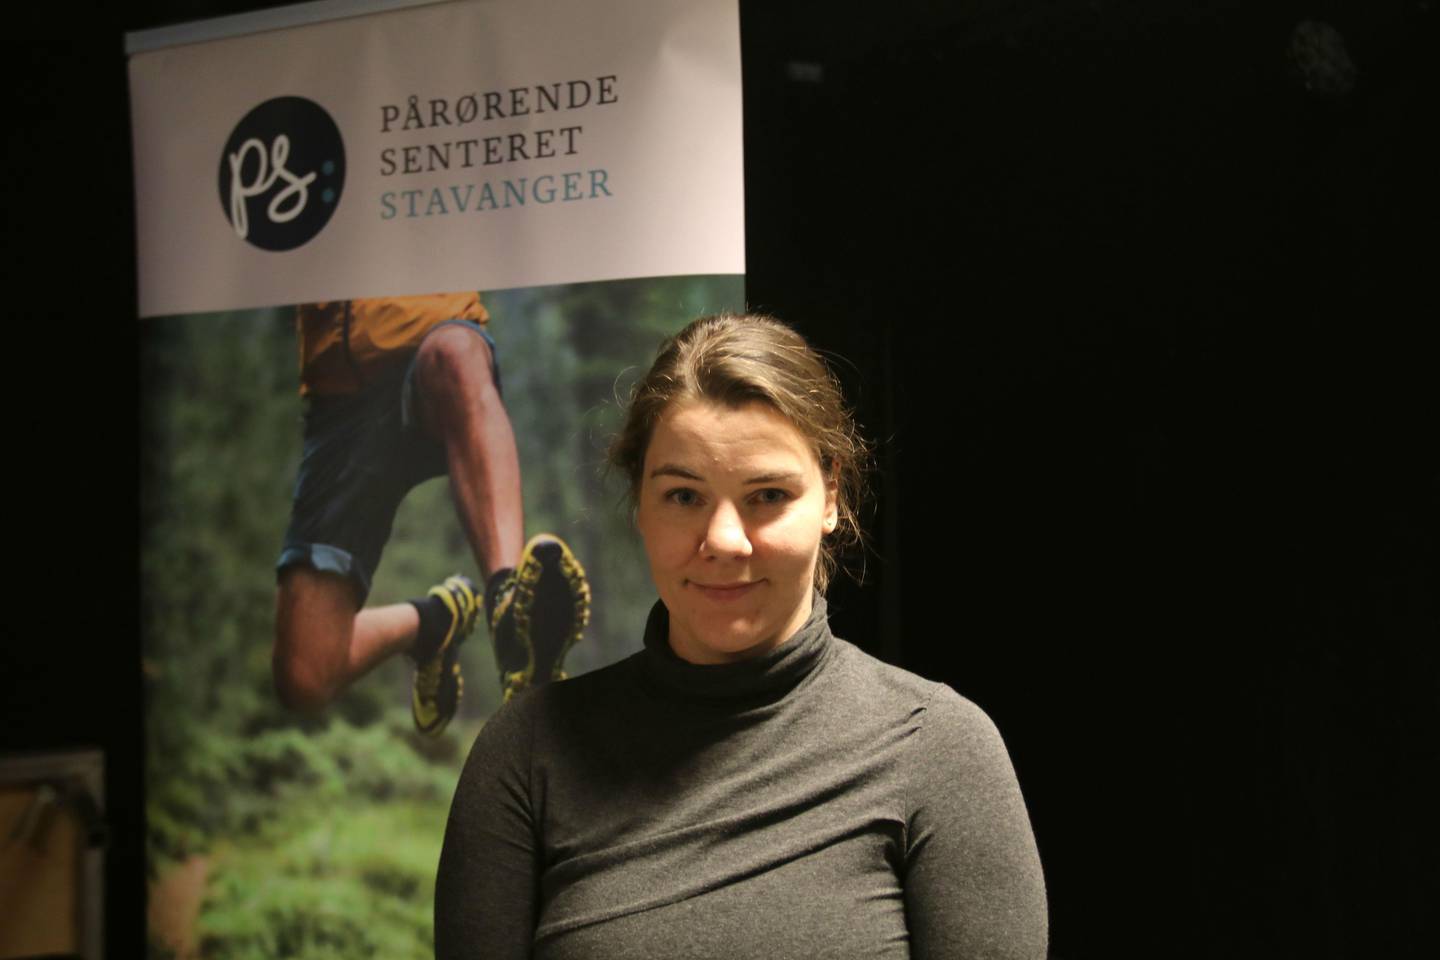 Prosjektleder og webredaktør ved Stiftelsen Pårørendesenteret Stavanger, Kristin Lyse, forteller at de allerede i 2017 lanserte en nettside for voksne pårørende.